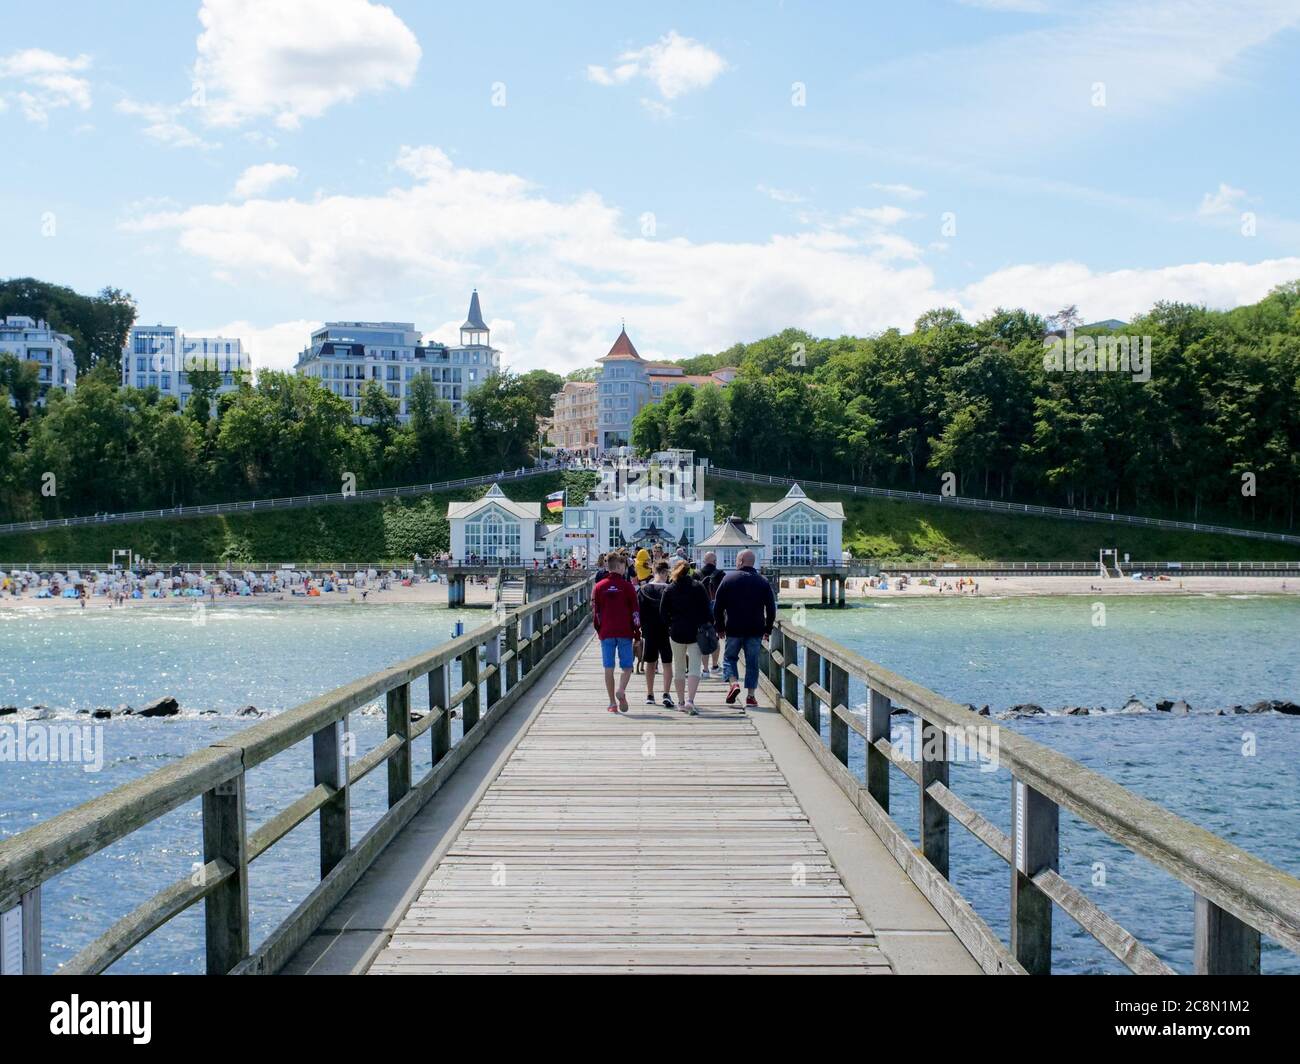 Wunderschöne Seebrücke in Sellin an der Ostsee mit vielen Touristen auf dem Pier Insel Rügen im Sommer Urlaub an der See Deutschland Stock Photo